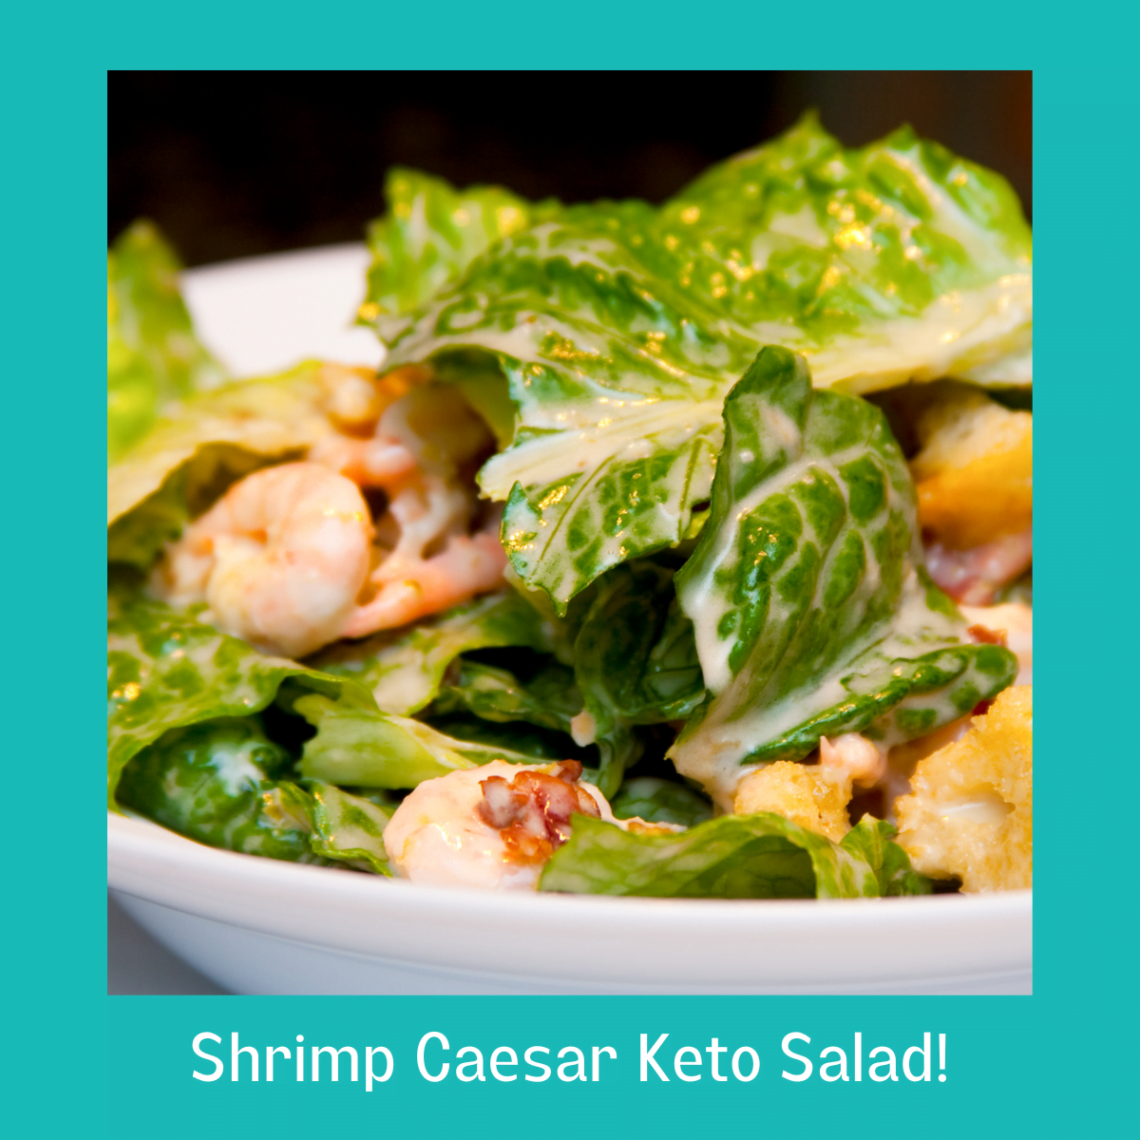 Shrimp Caesar Keto Salad